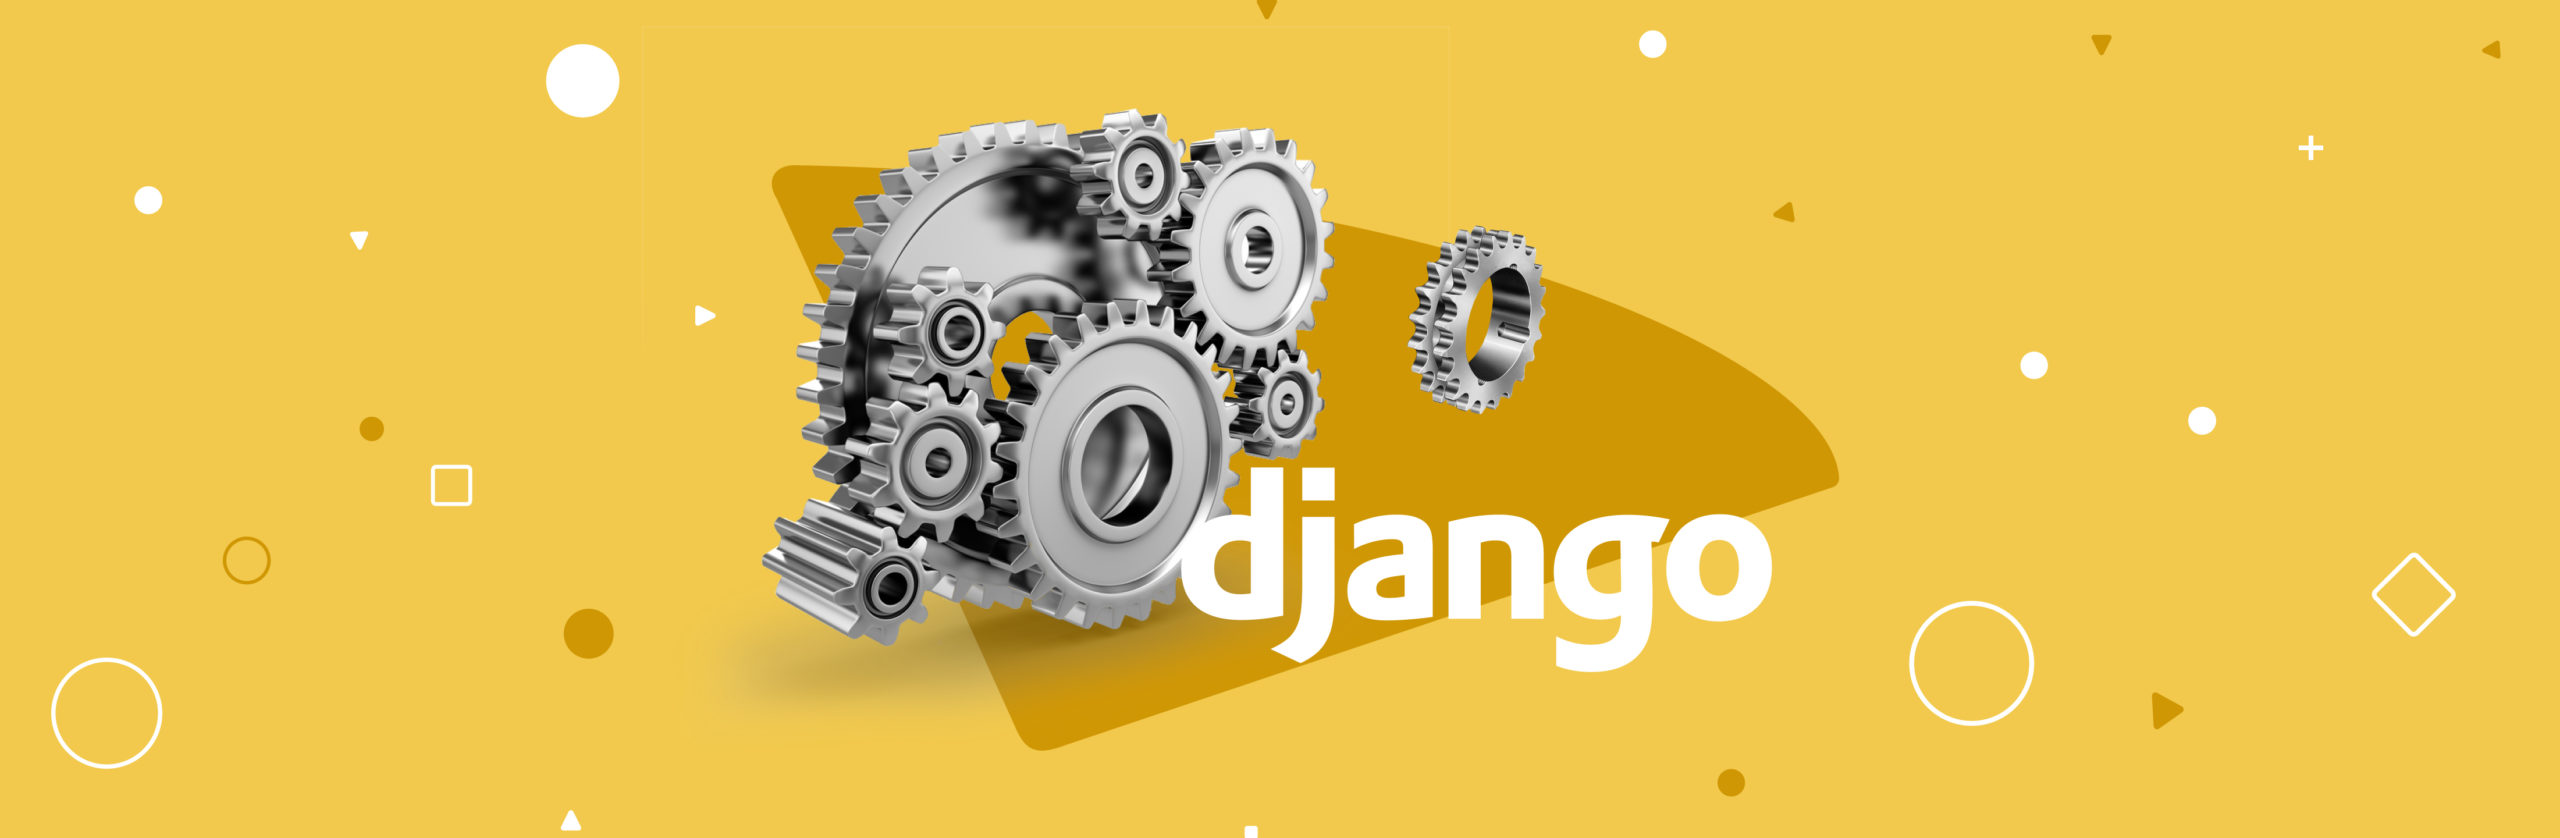 Configuring Django Settings: Best Practices